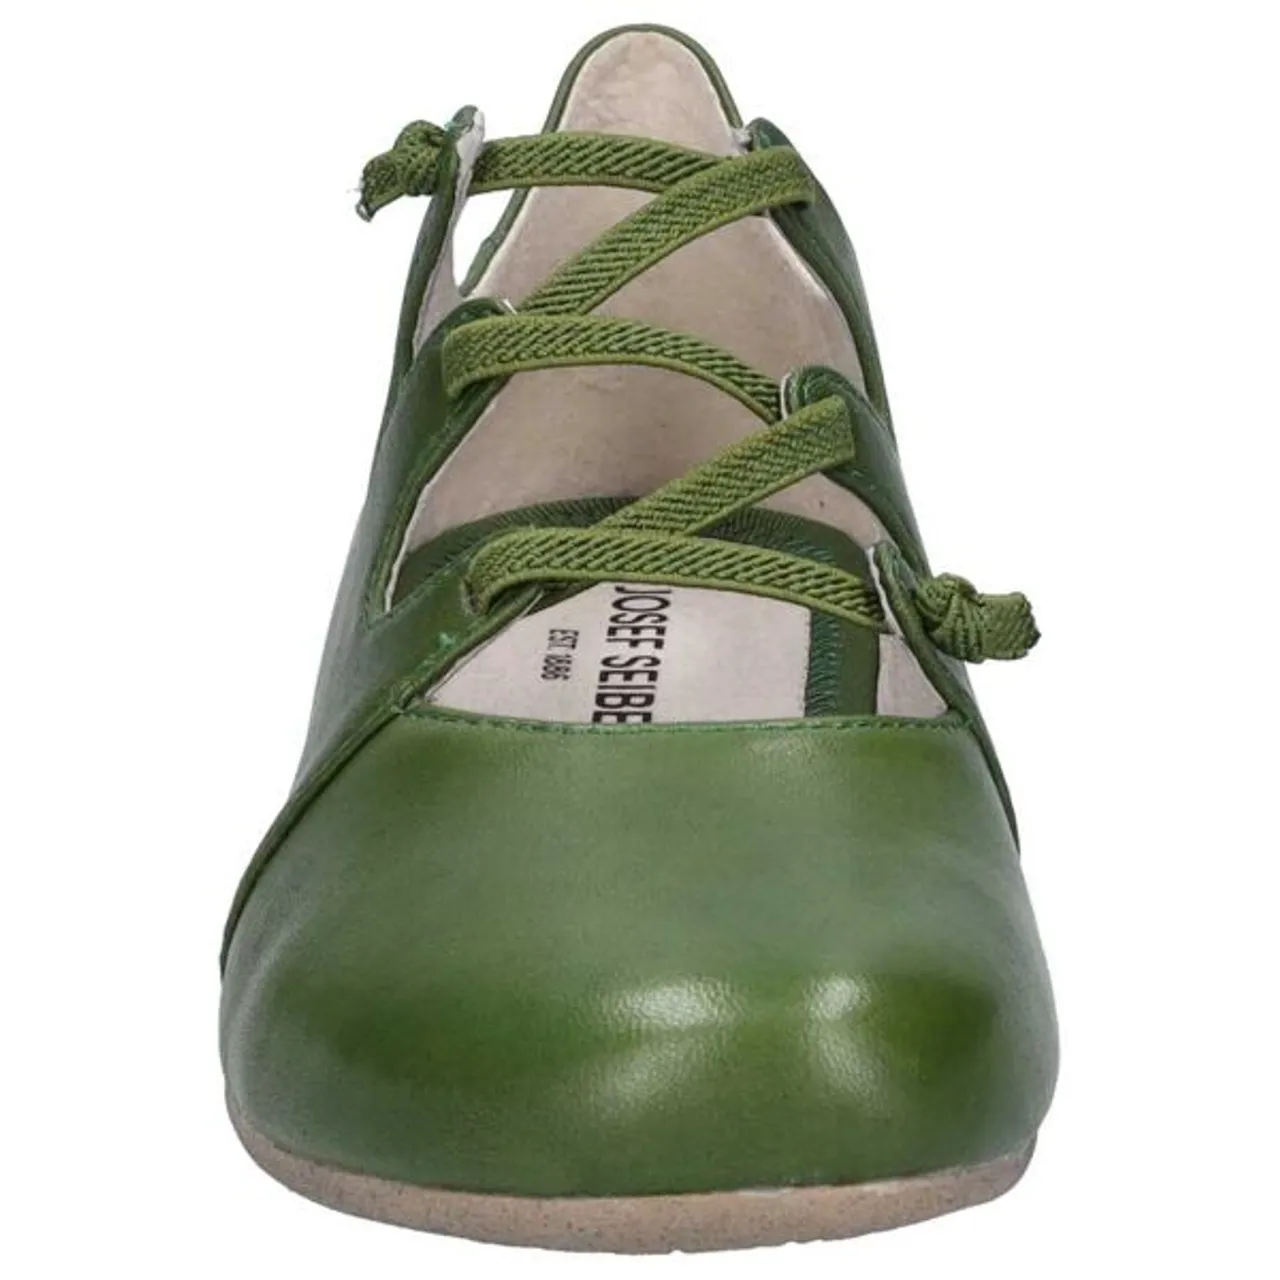 Riemchenballerina JOSEF SEIBEL "Fiona 04" Gr. 41, grün (olivgrün) Damen Schuhe Spangenschuhe